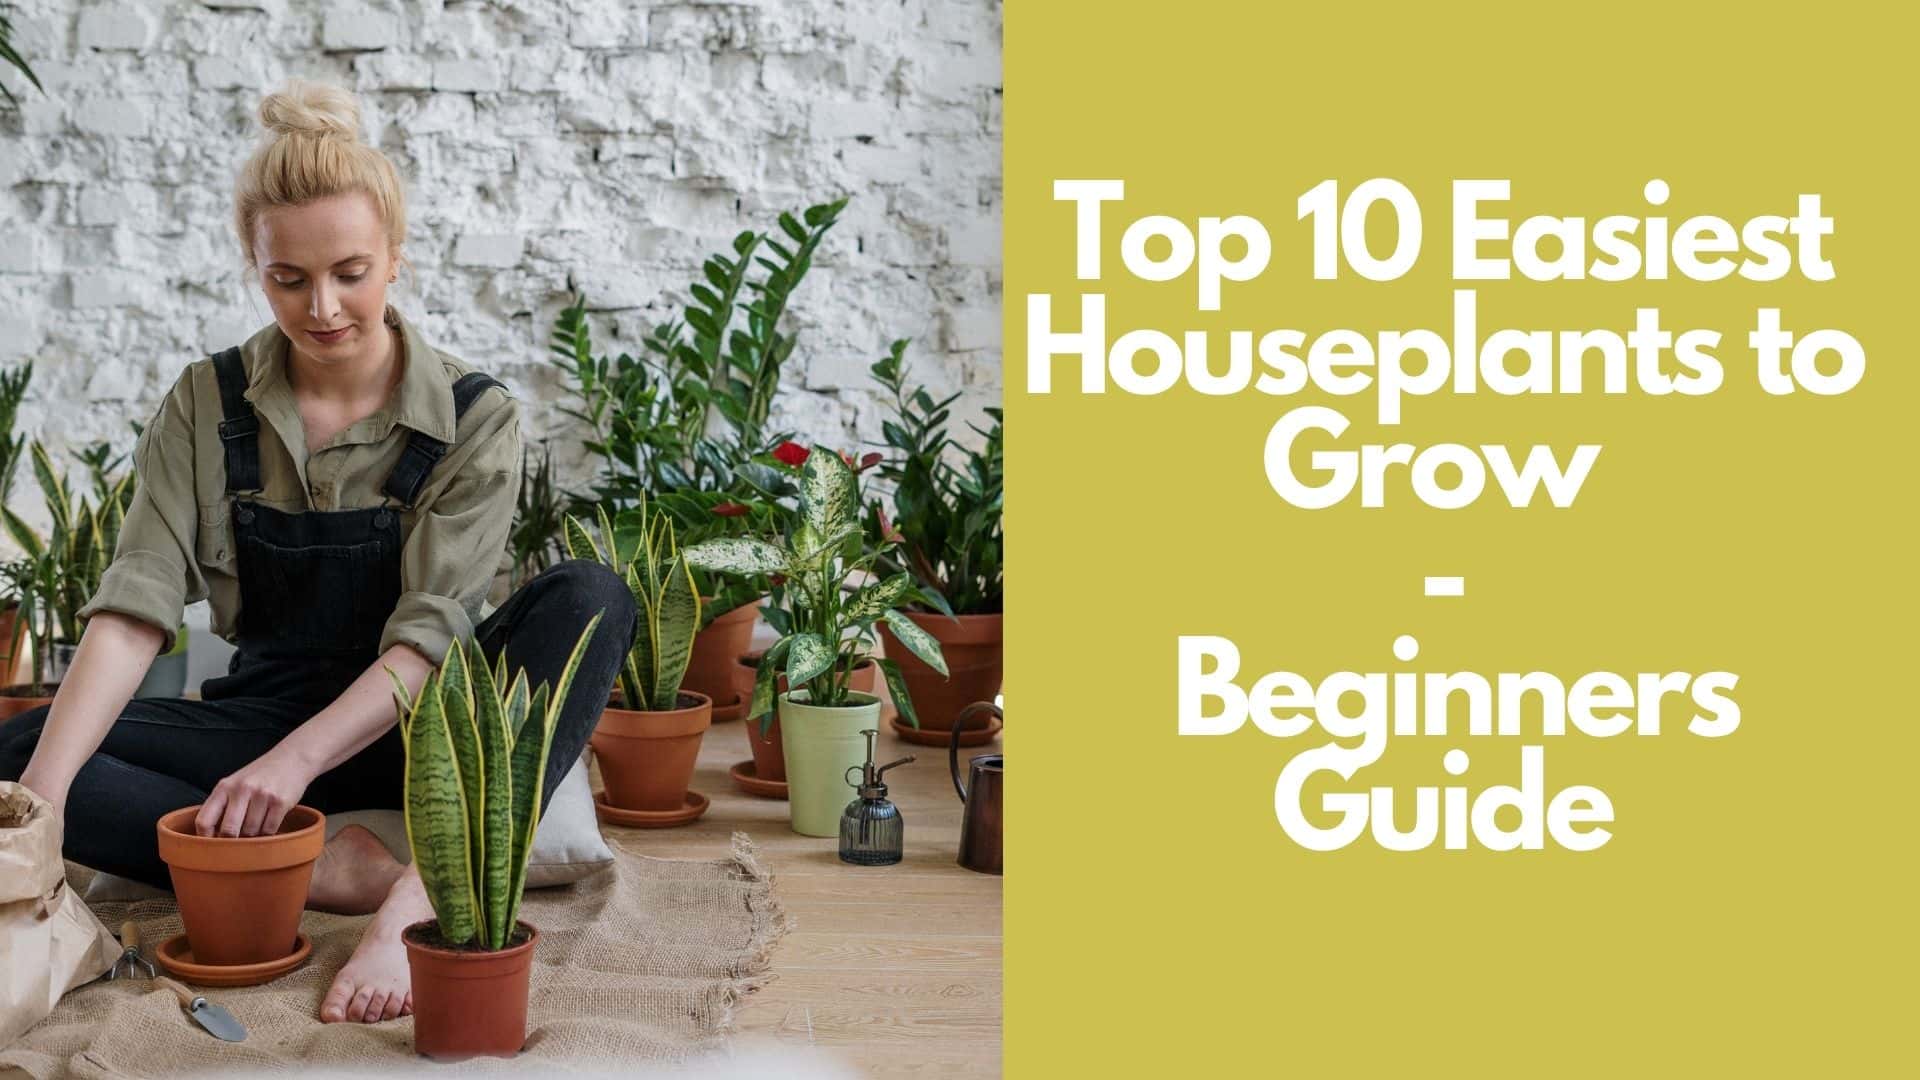 Top 10 Easiest Houseplants to Grow  Beginners Guide